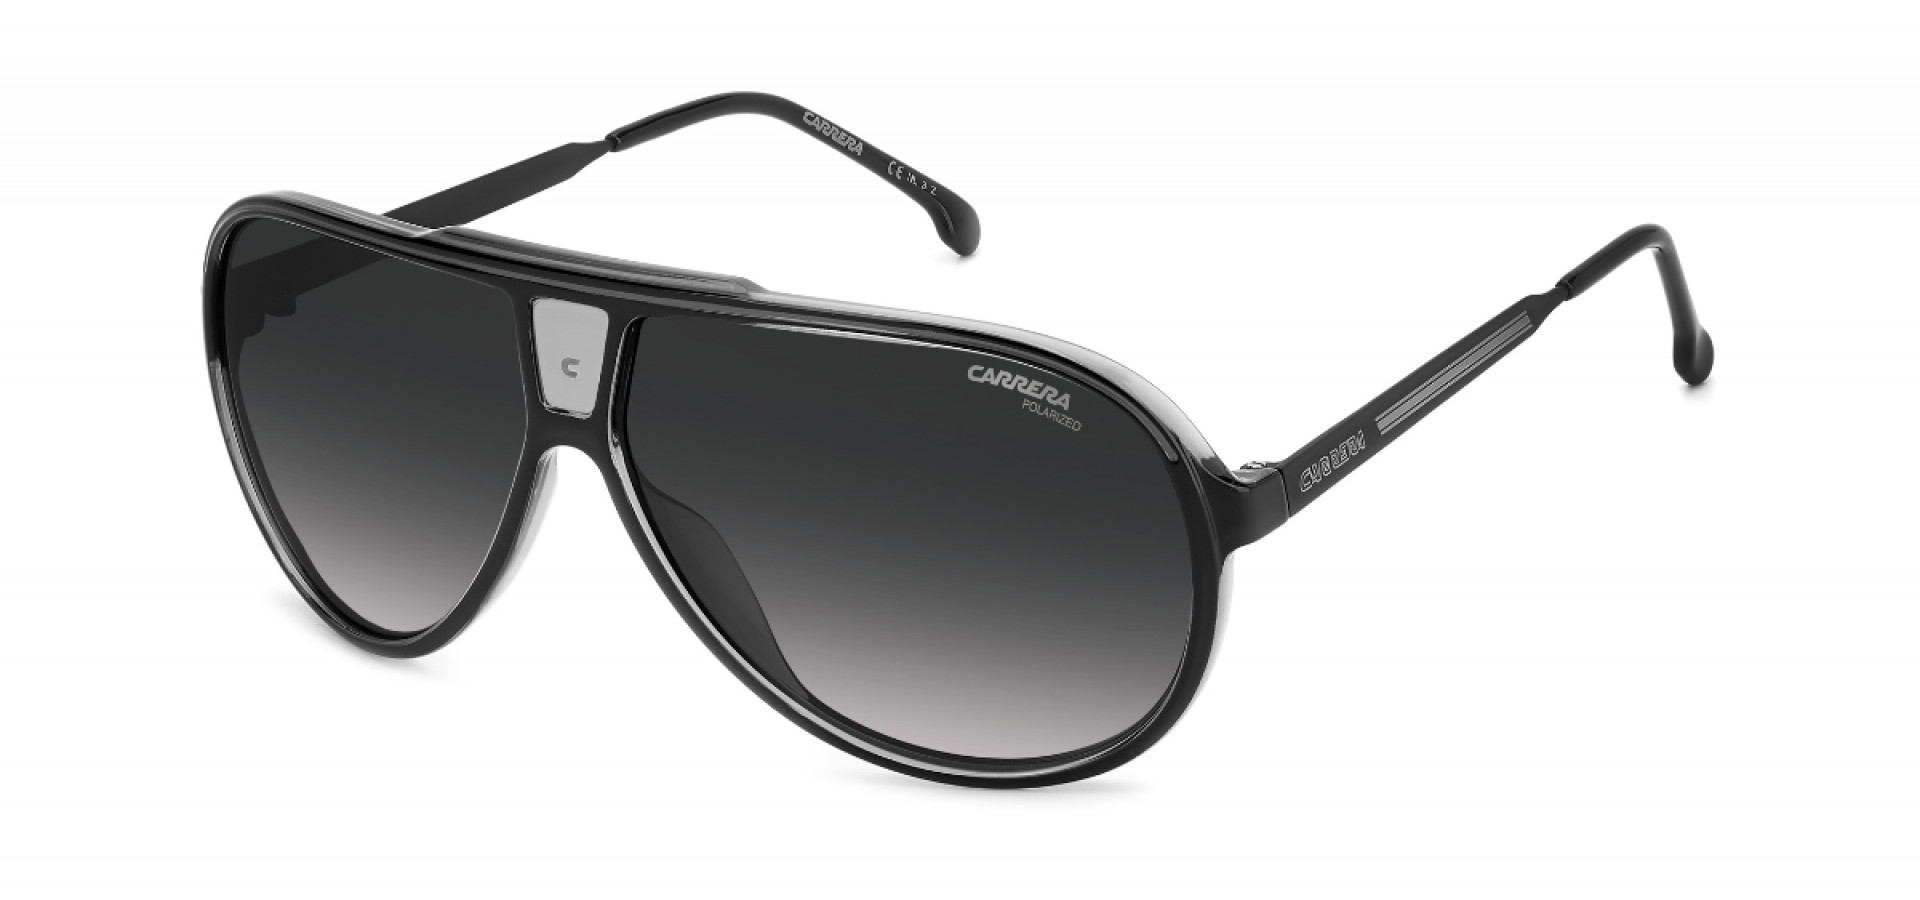 Sunčane naočale Carrera CARRERA 1050/S 08A 63WJ: Boja: Black Grey, Veličina: 63-10-135, Spol: muške, Materijal: metal, Vrsta leće: polarizirane